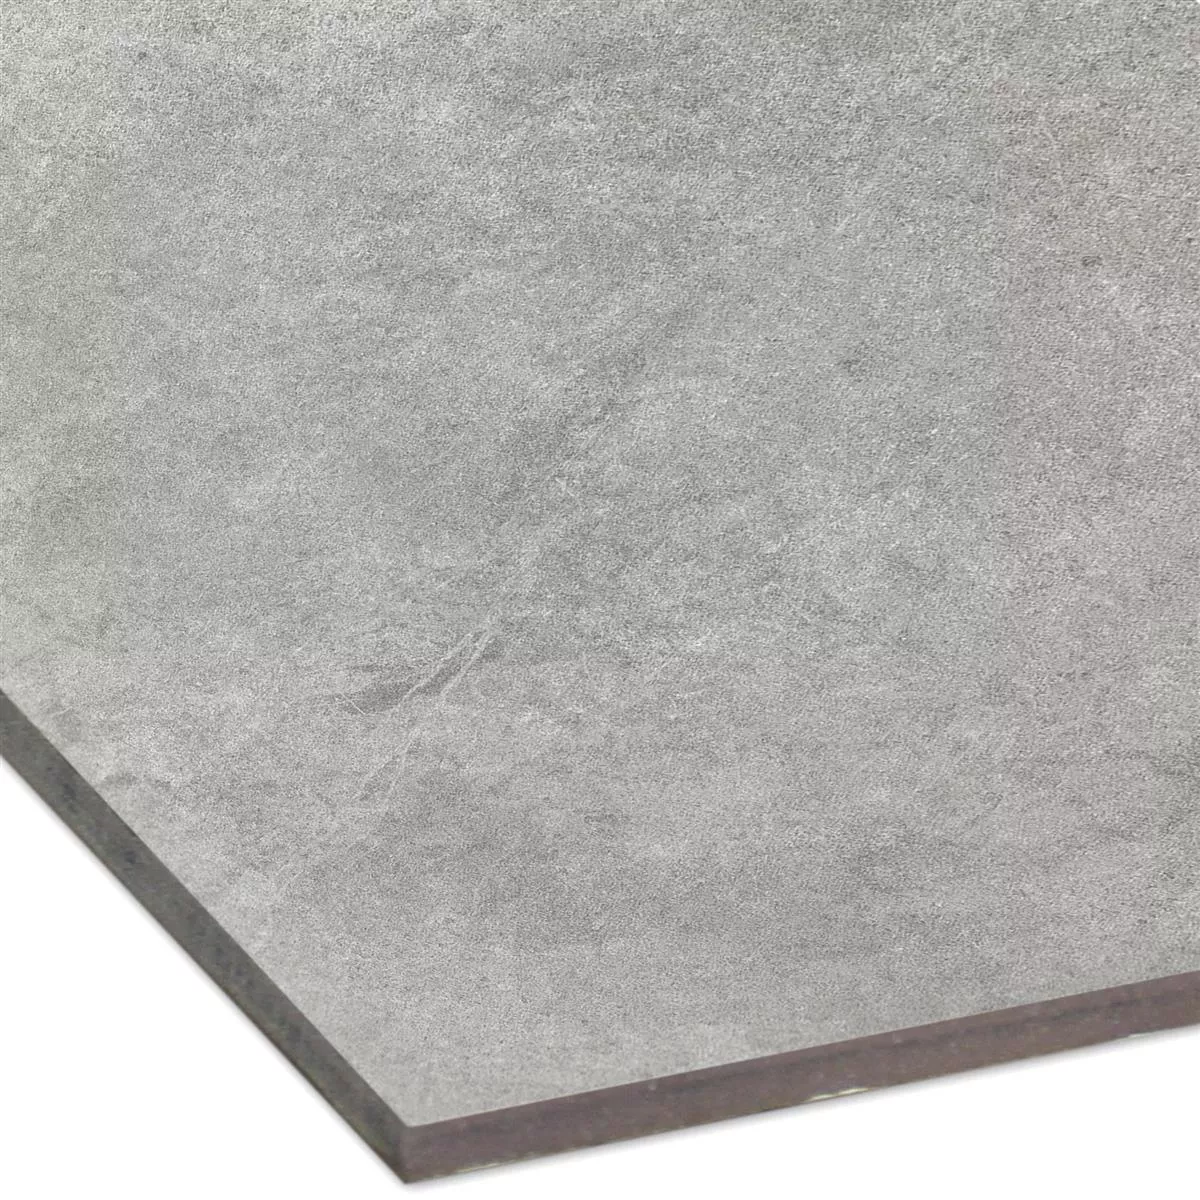 Sample Floor Tiles Montana Unglazed Dark Grey 60x60cm / R10B